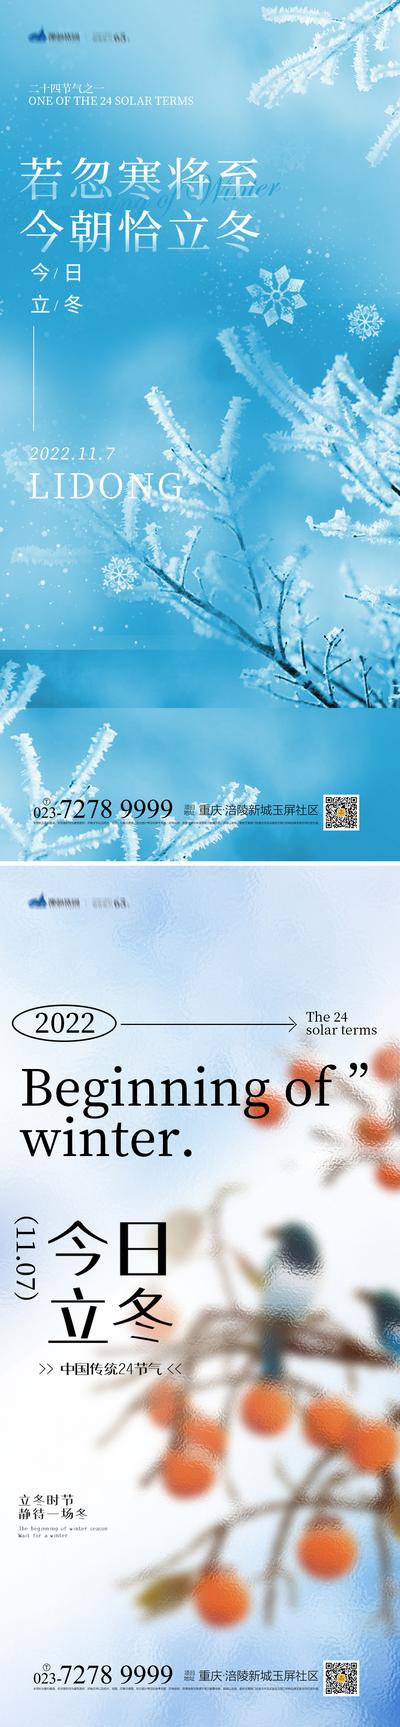 南门网 海报 二十四节气 立冬 冬天 雪花 柿子